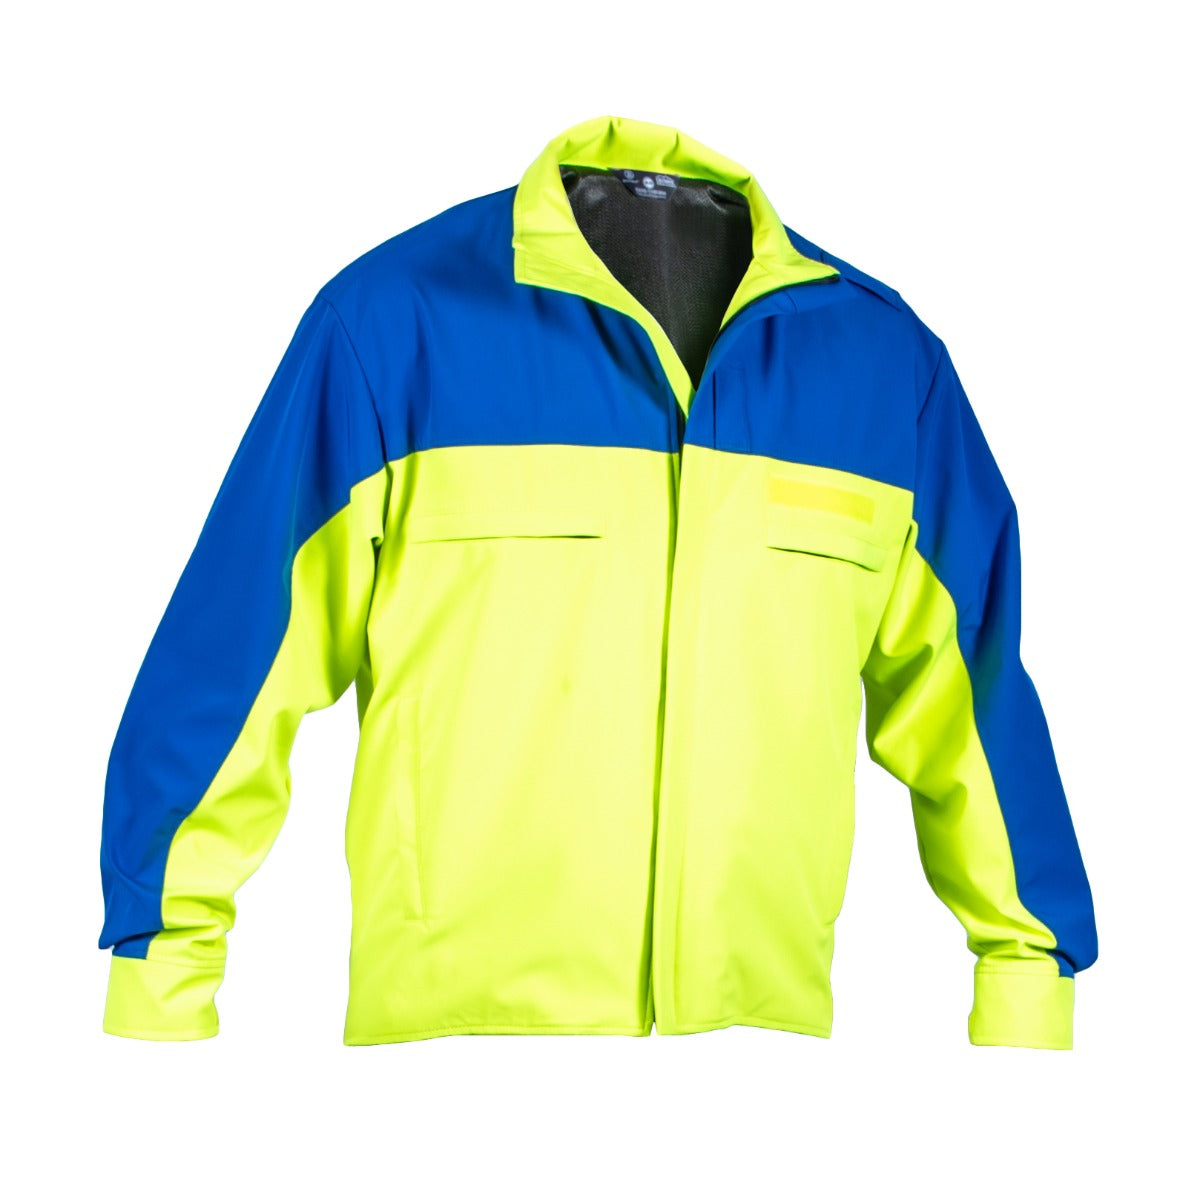 New York Zip Sleeve Jacket Waterproof - Sound Uniform Solutions